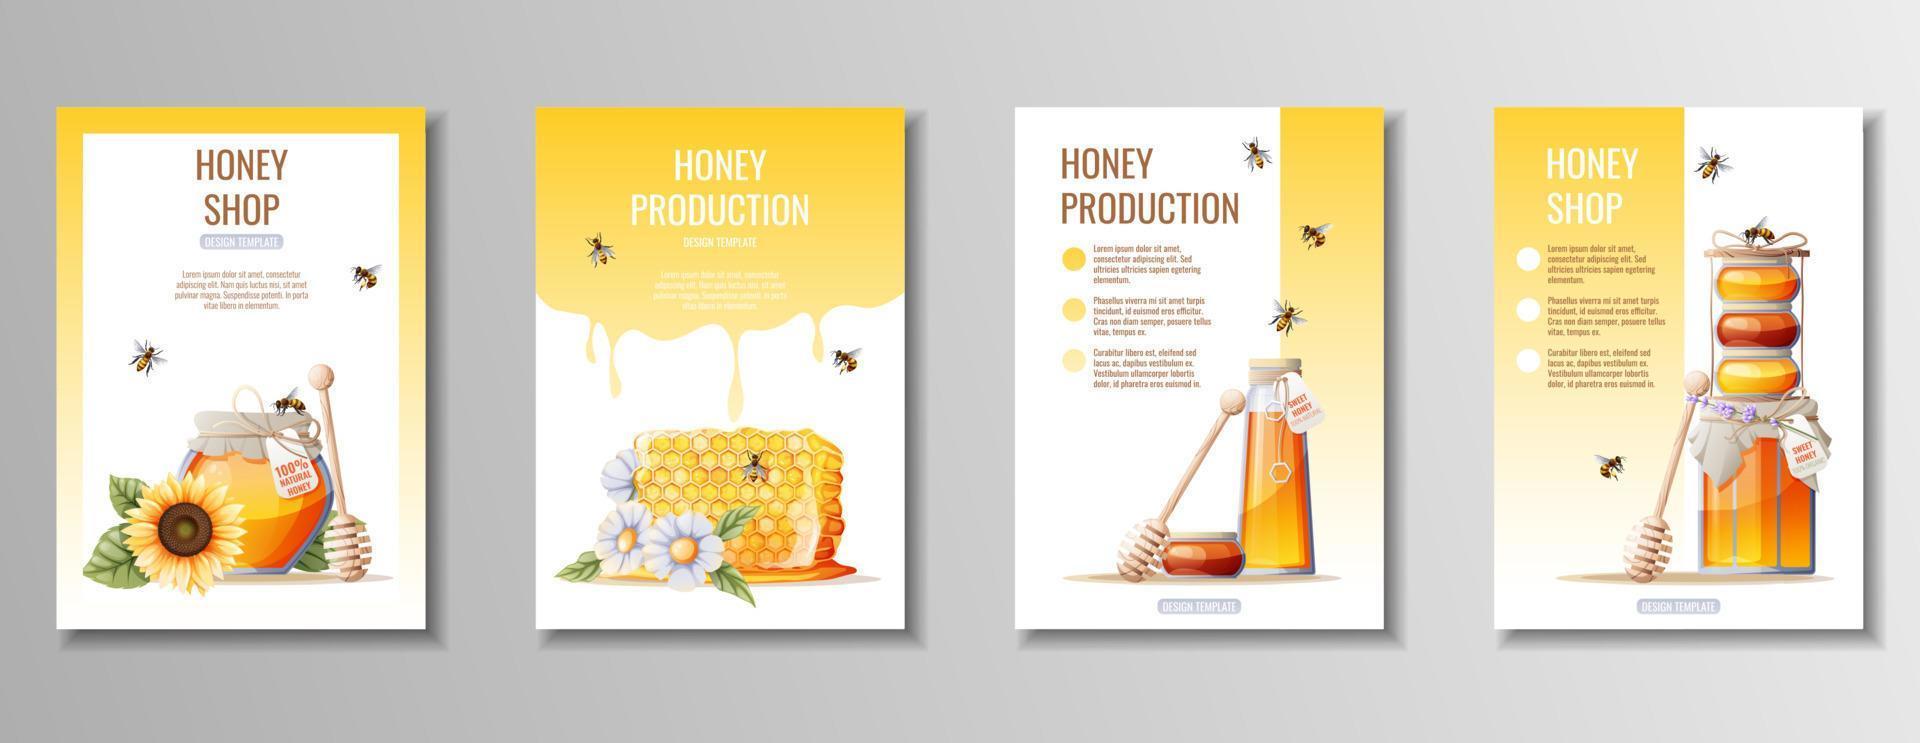 reeks van flyers ontwerp, reclame banier met een natuurlijk nuttig product-honing. honing winkel, gezond en zoet producten. vector illustratie van poster in a4 grootte voor folder, banier, ansichtkaart, poster, enz.